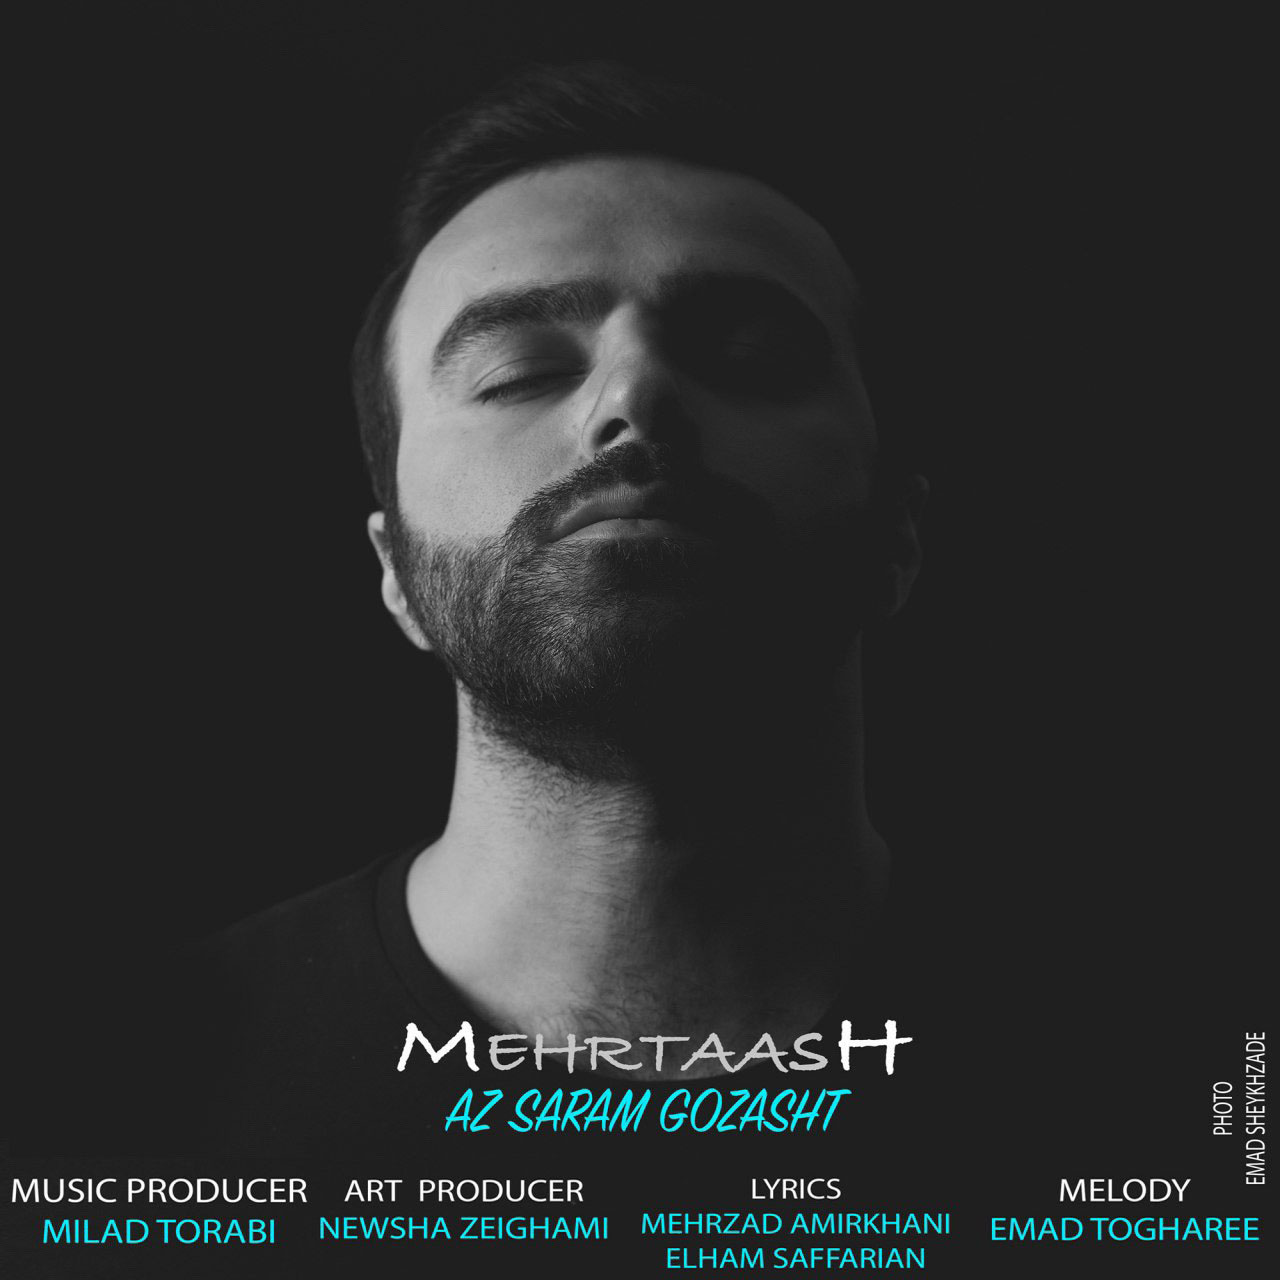  دانلود آهنگ جدید مهرتاش - از سرم گذشت | Download New Music By Mehrtaash - Az Saram Gozasht